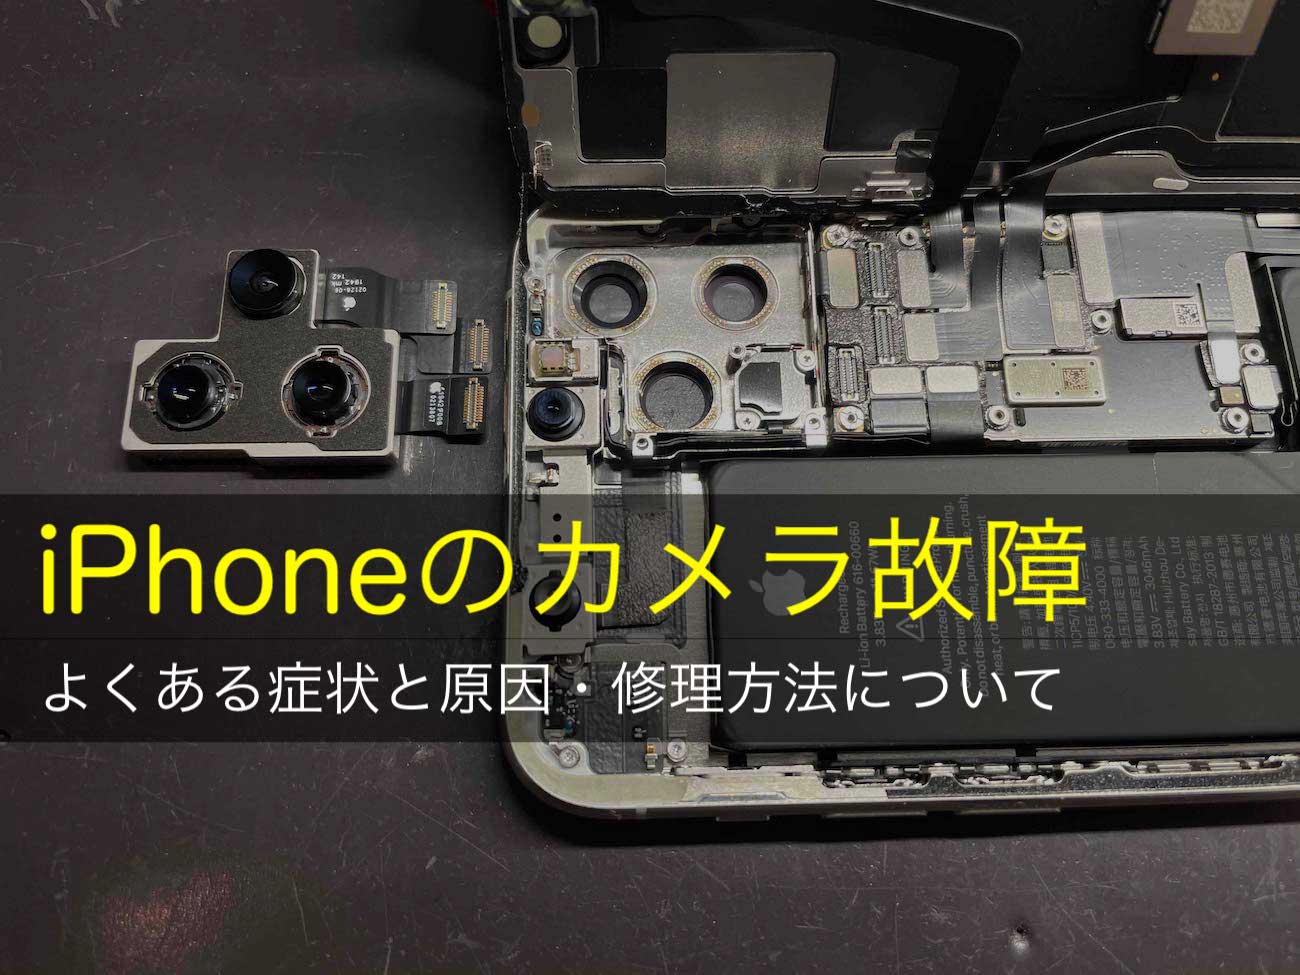 Iphoneのカメラが故障 よくある症状と原因 修理方法について スマートドクタープロ